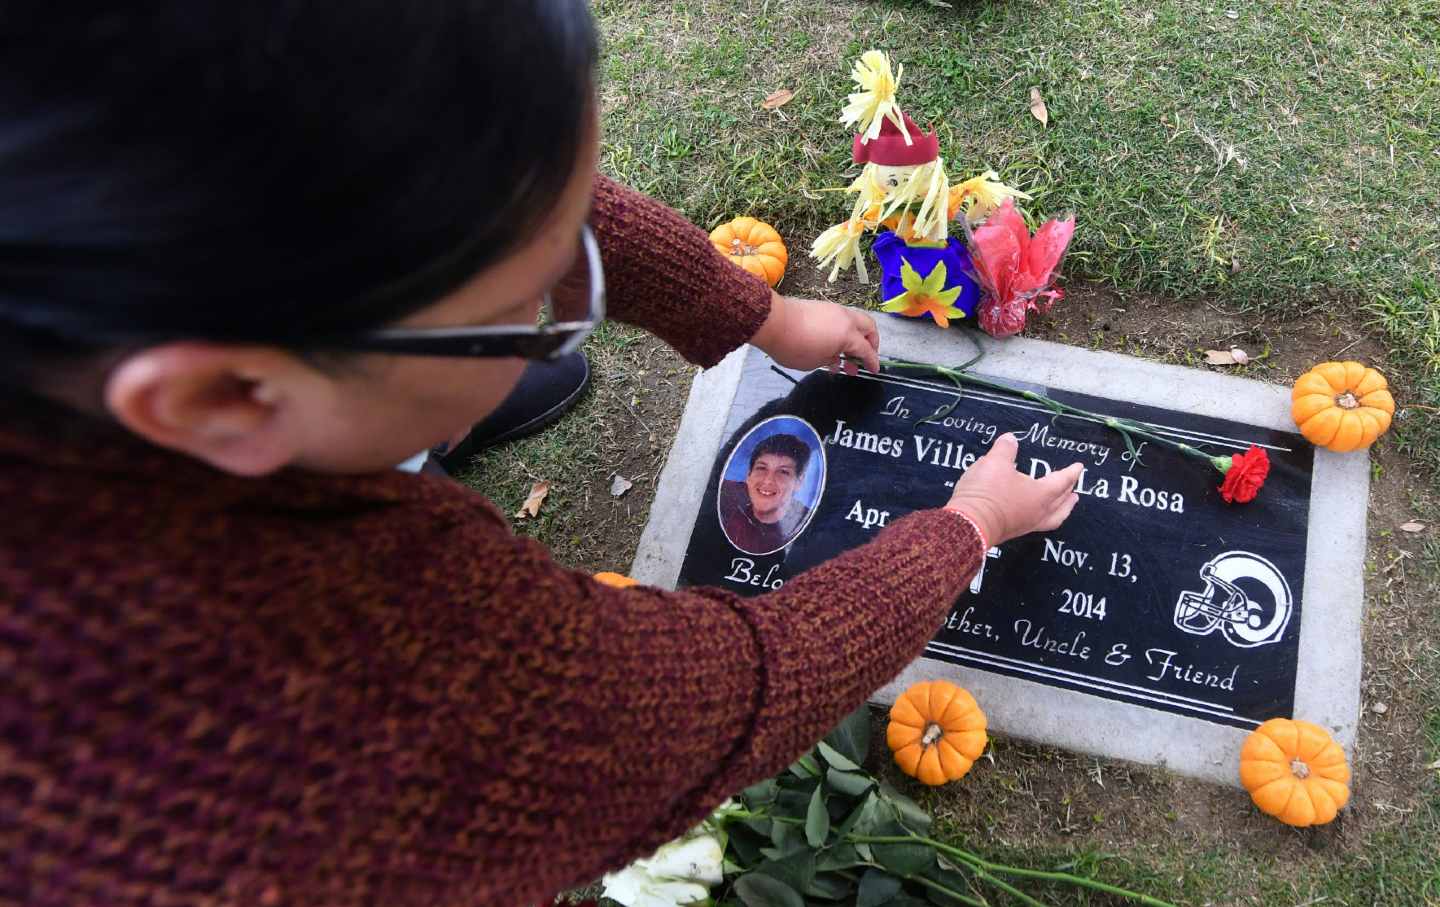 Mother of James De la Rosa places flowers on her son's grave